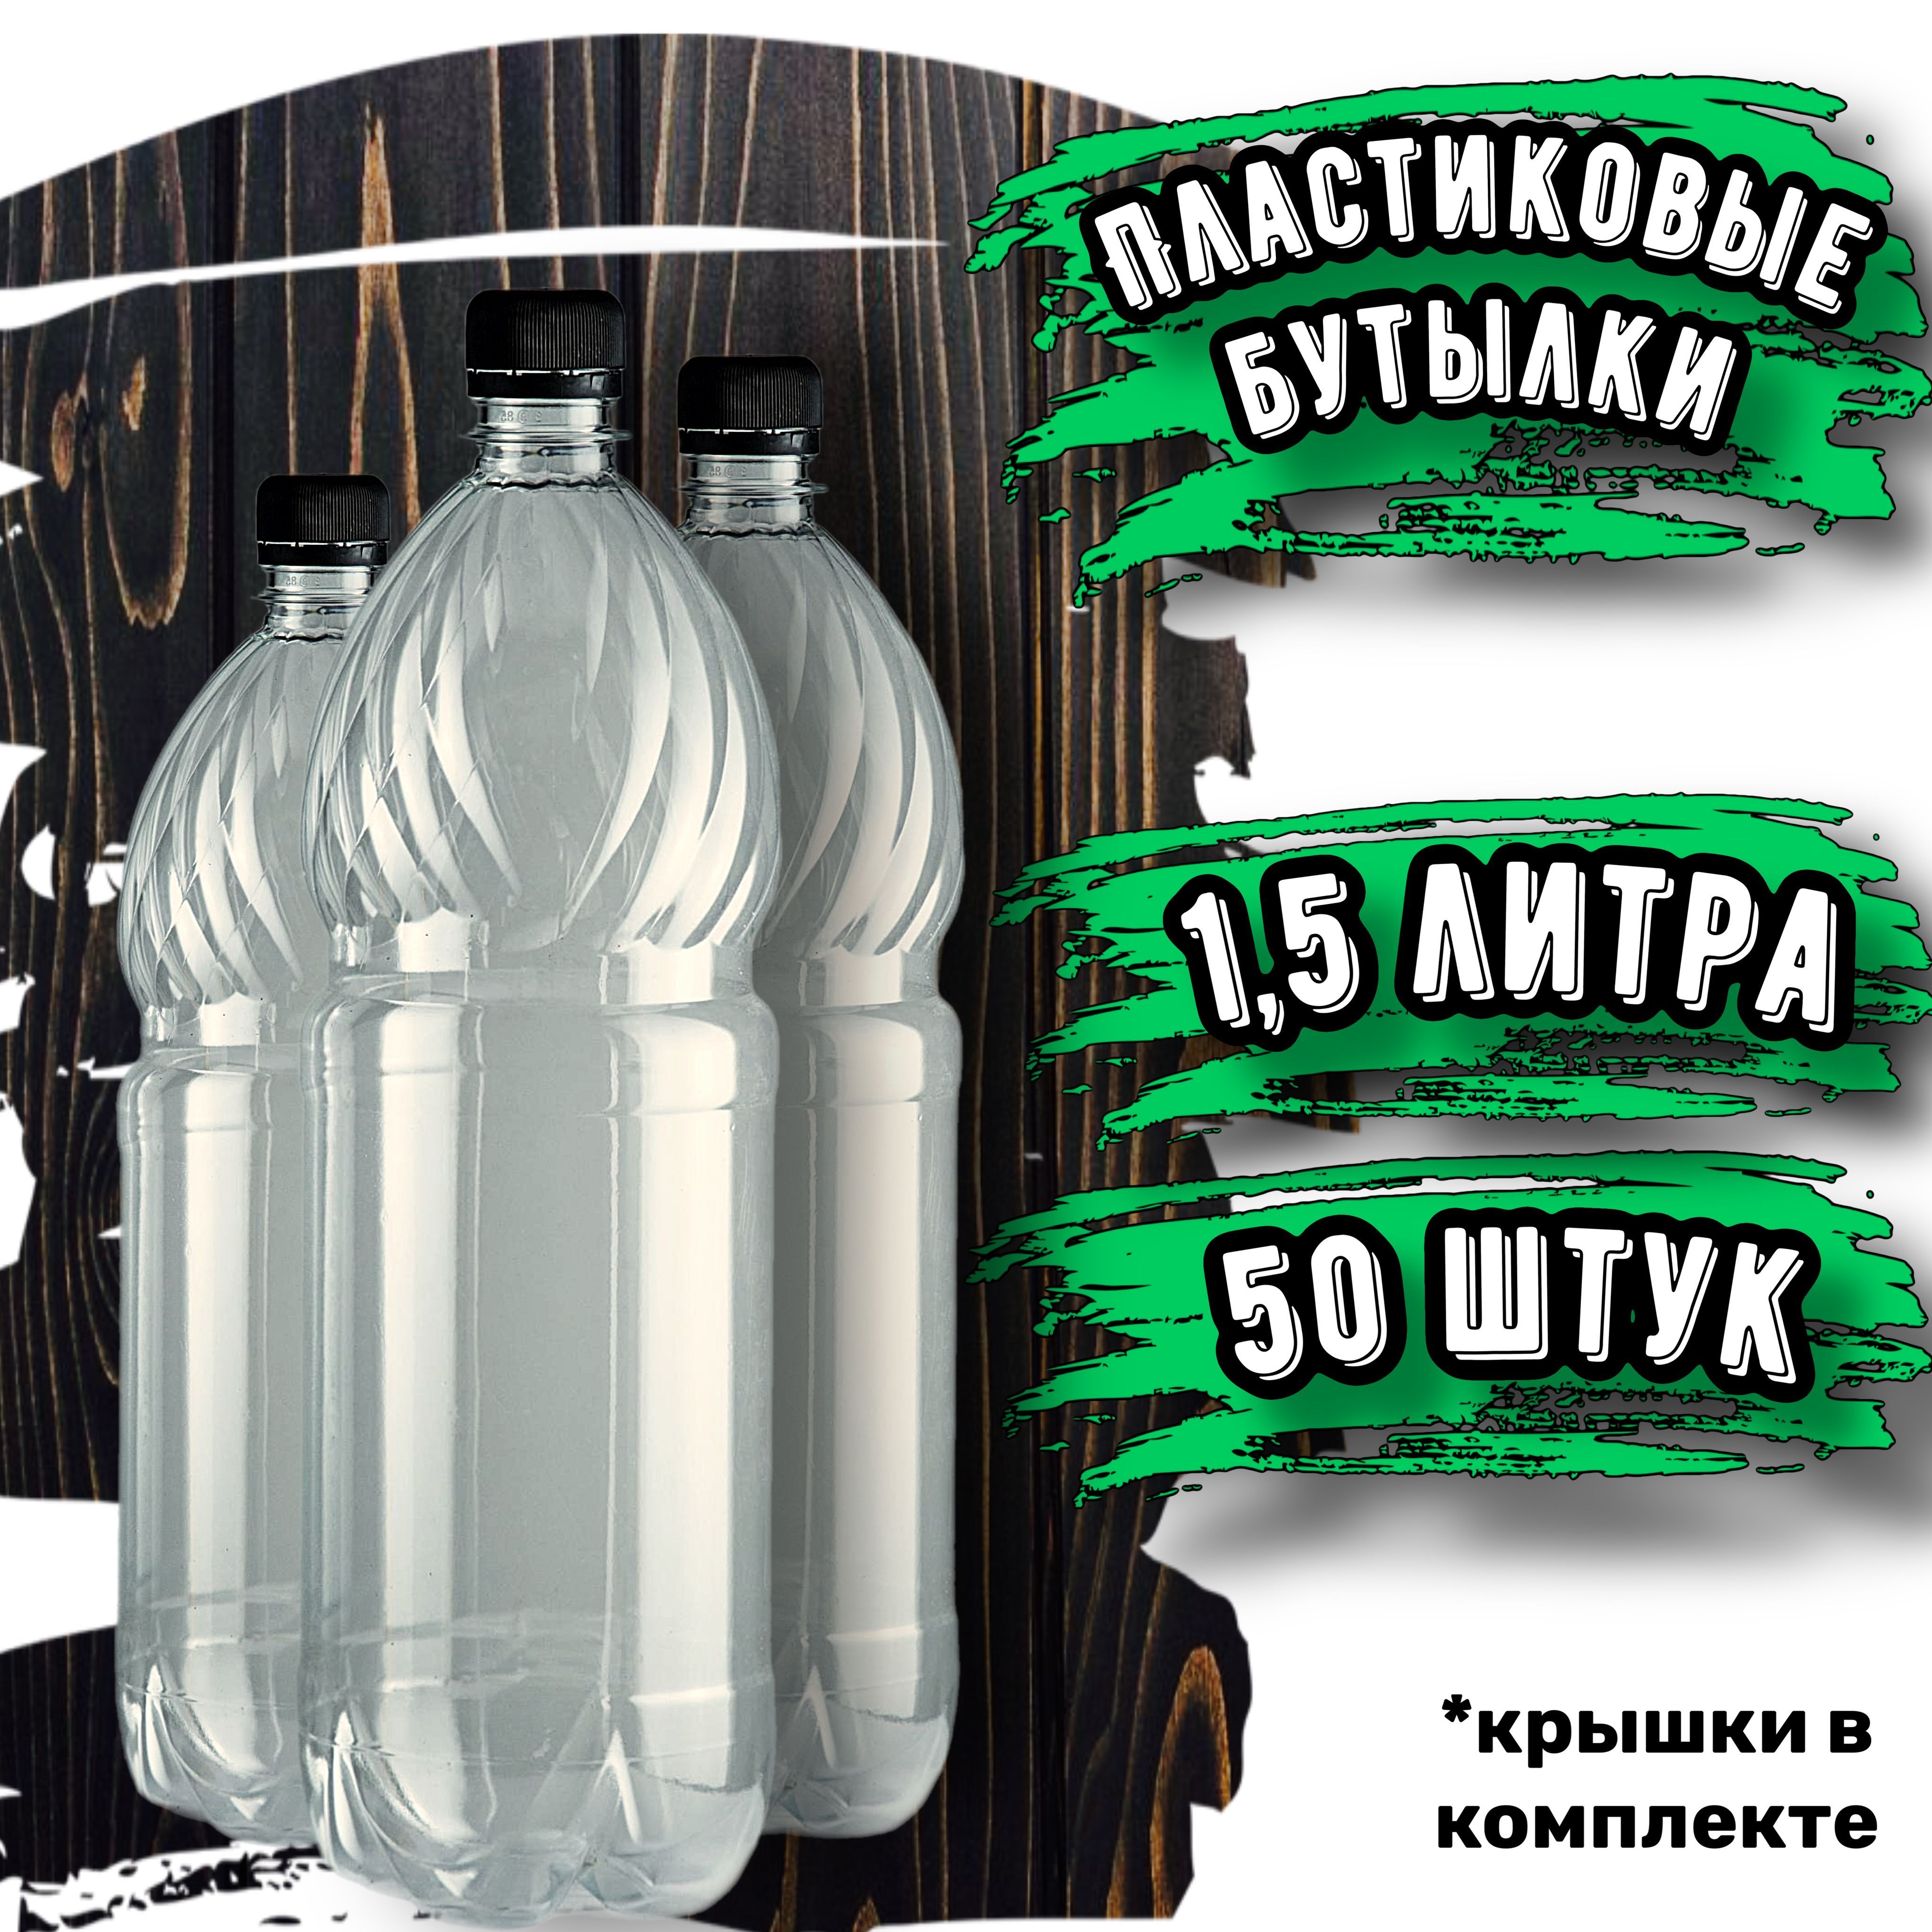 Засовывать бутылки в очко - порно видео на grantafl.ru